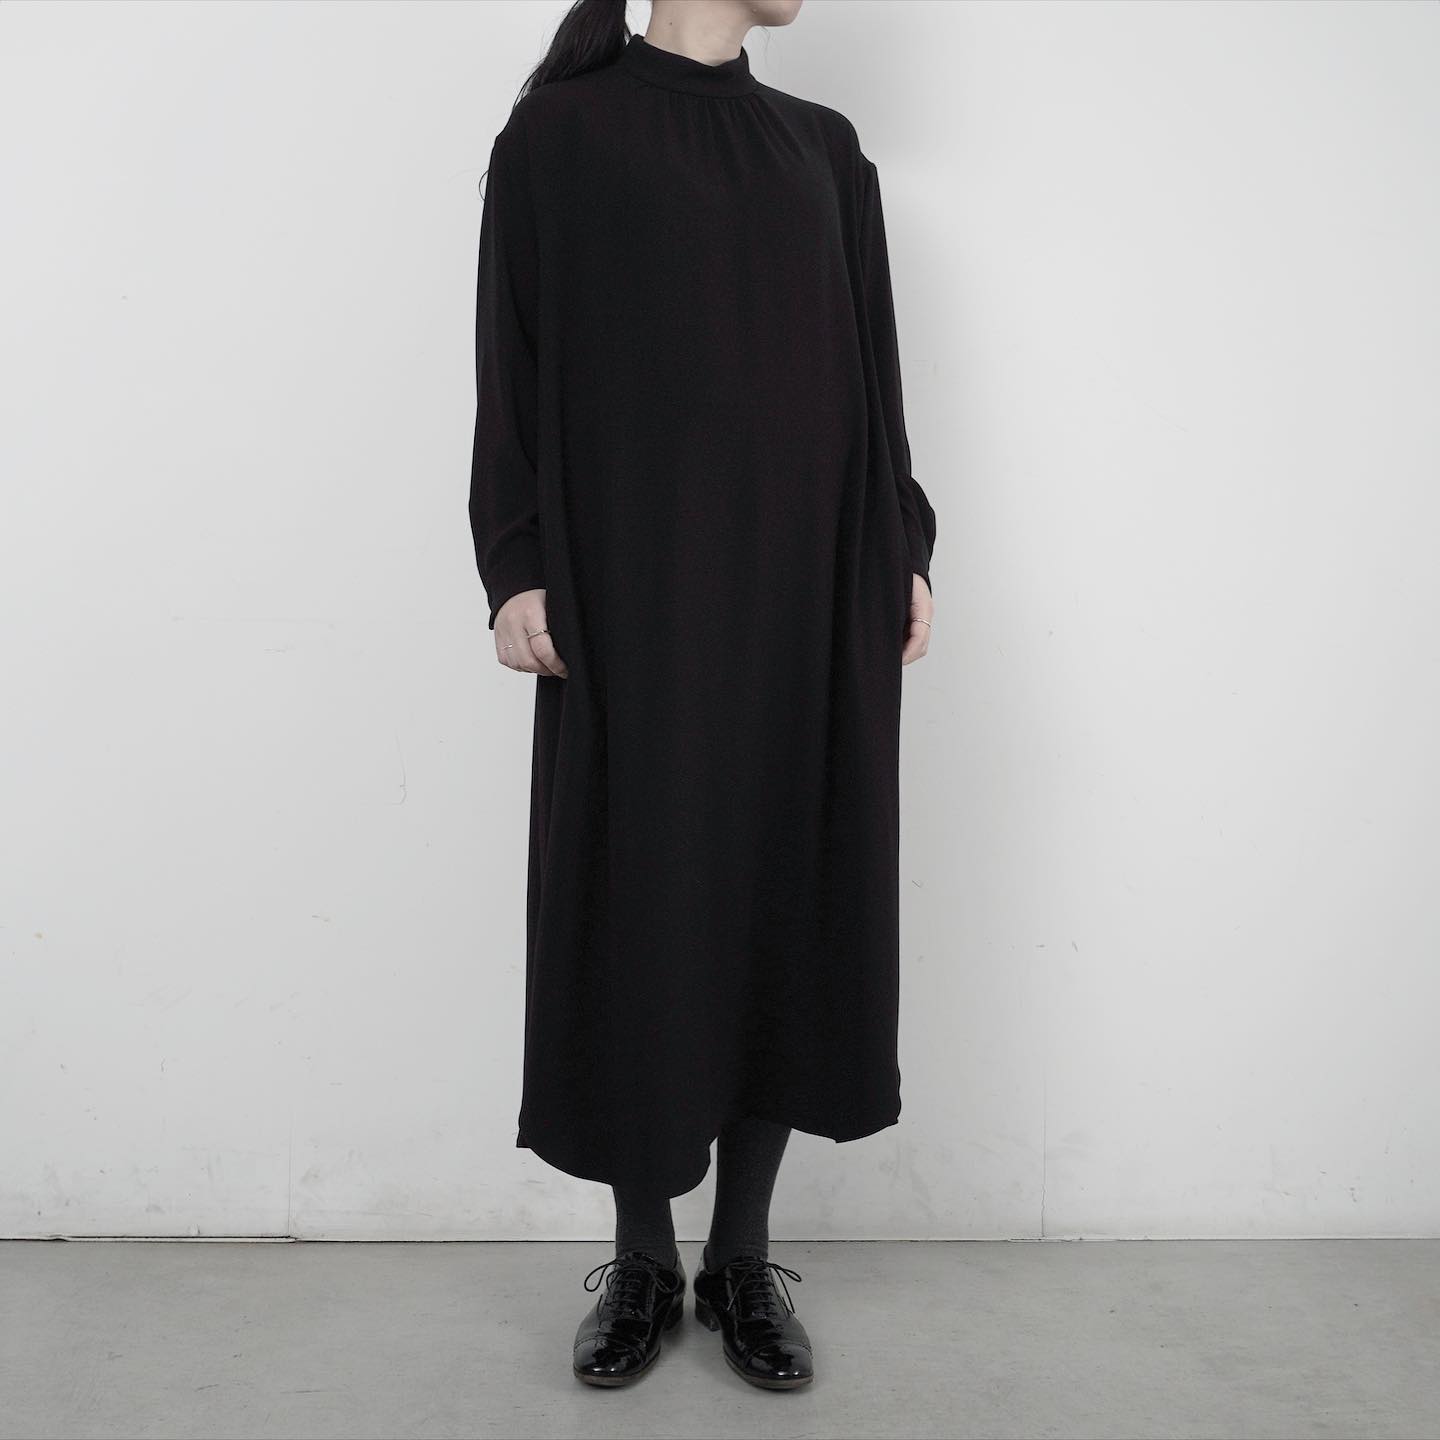 ゴーシュ バックサテンブラック 首元にギャザー、 裾にかけて綺麗な落ち感でエレガントな雰囲気のワンピース | HAUS